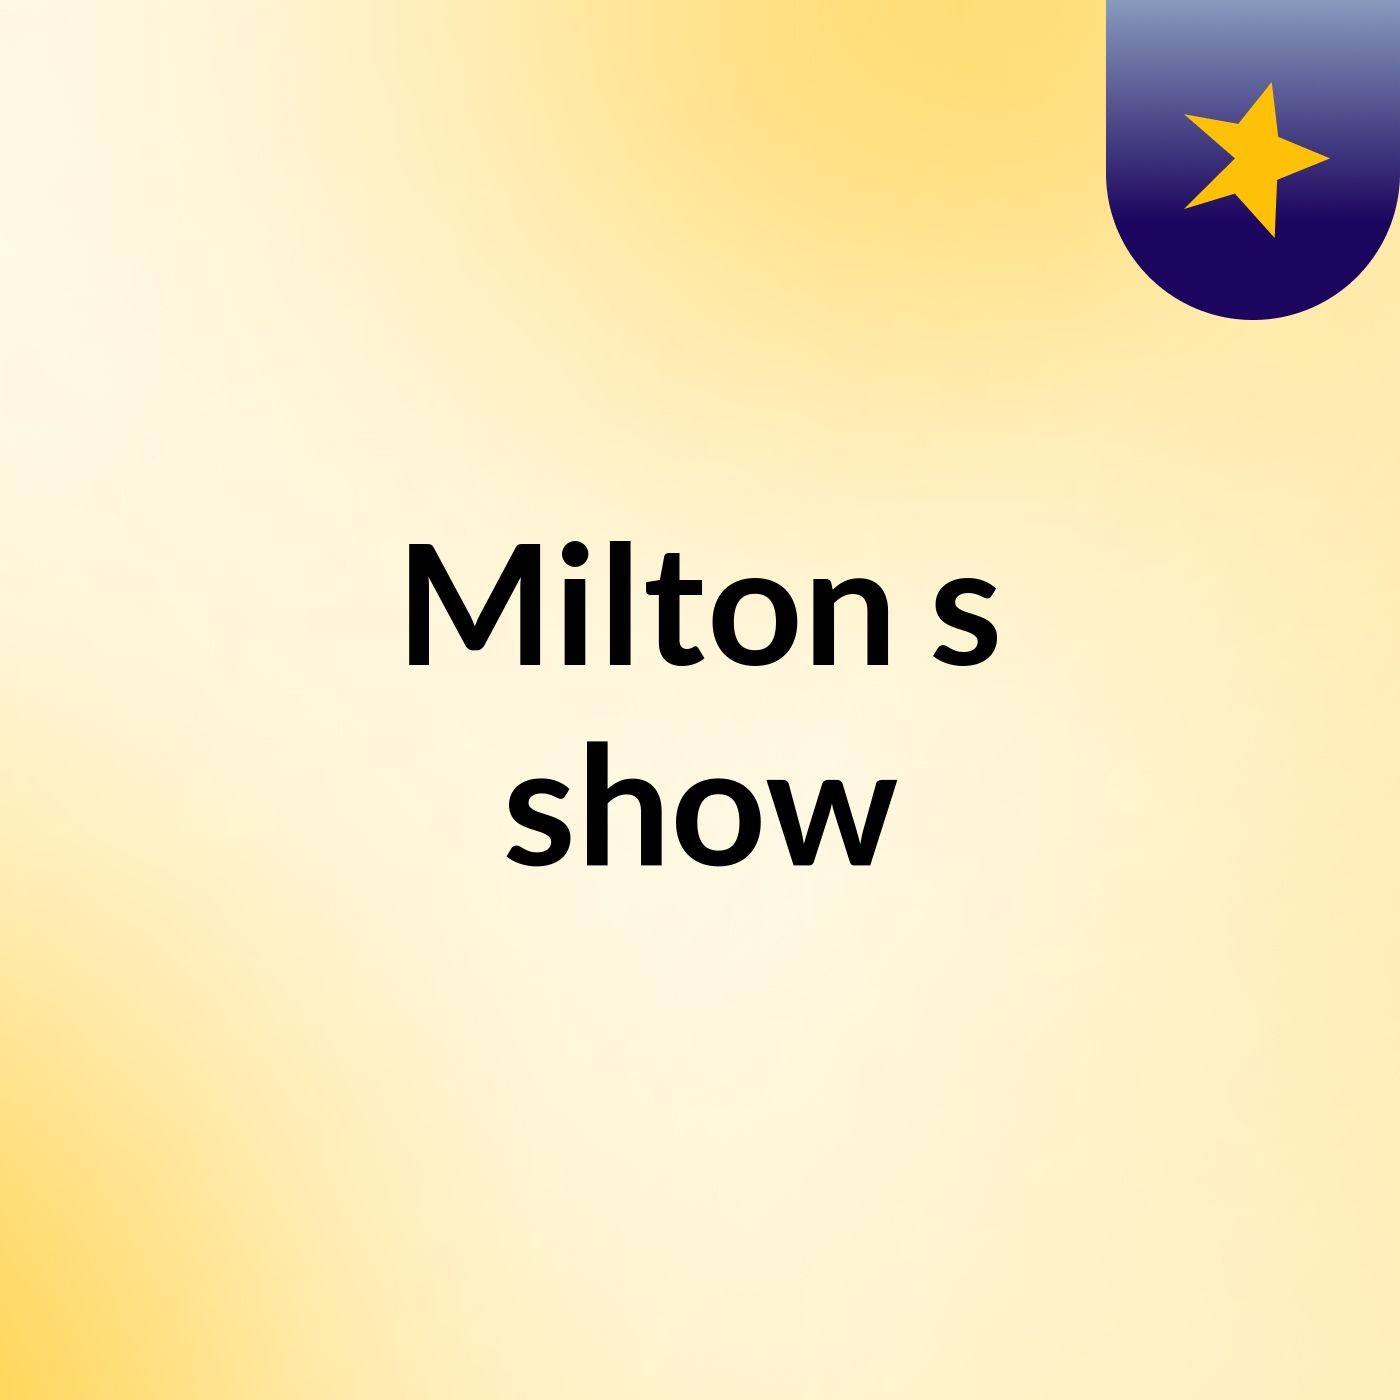 Milton's show